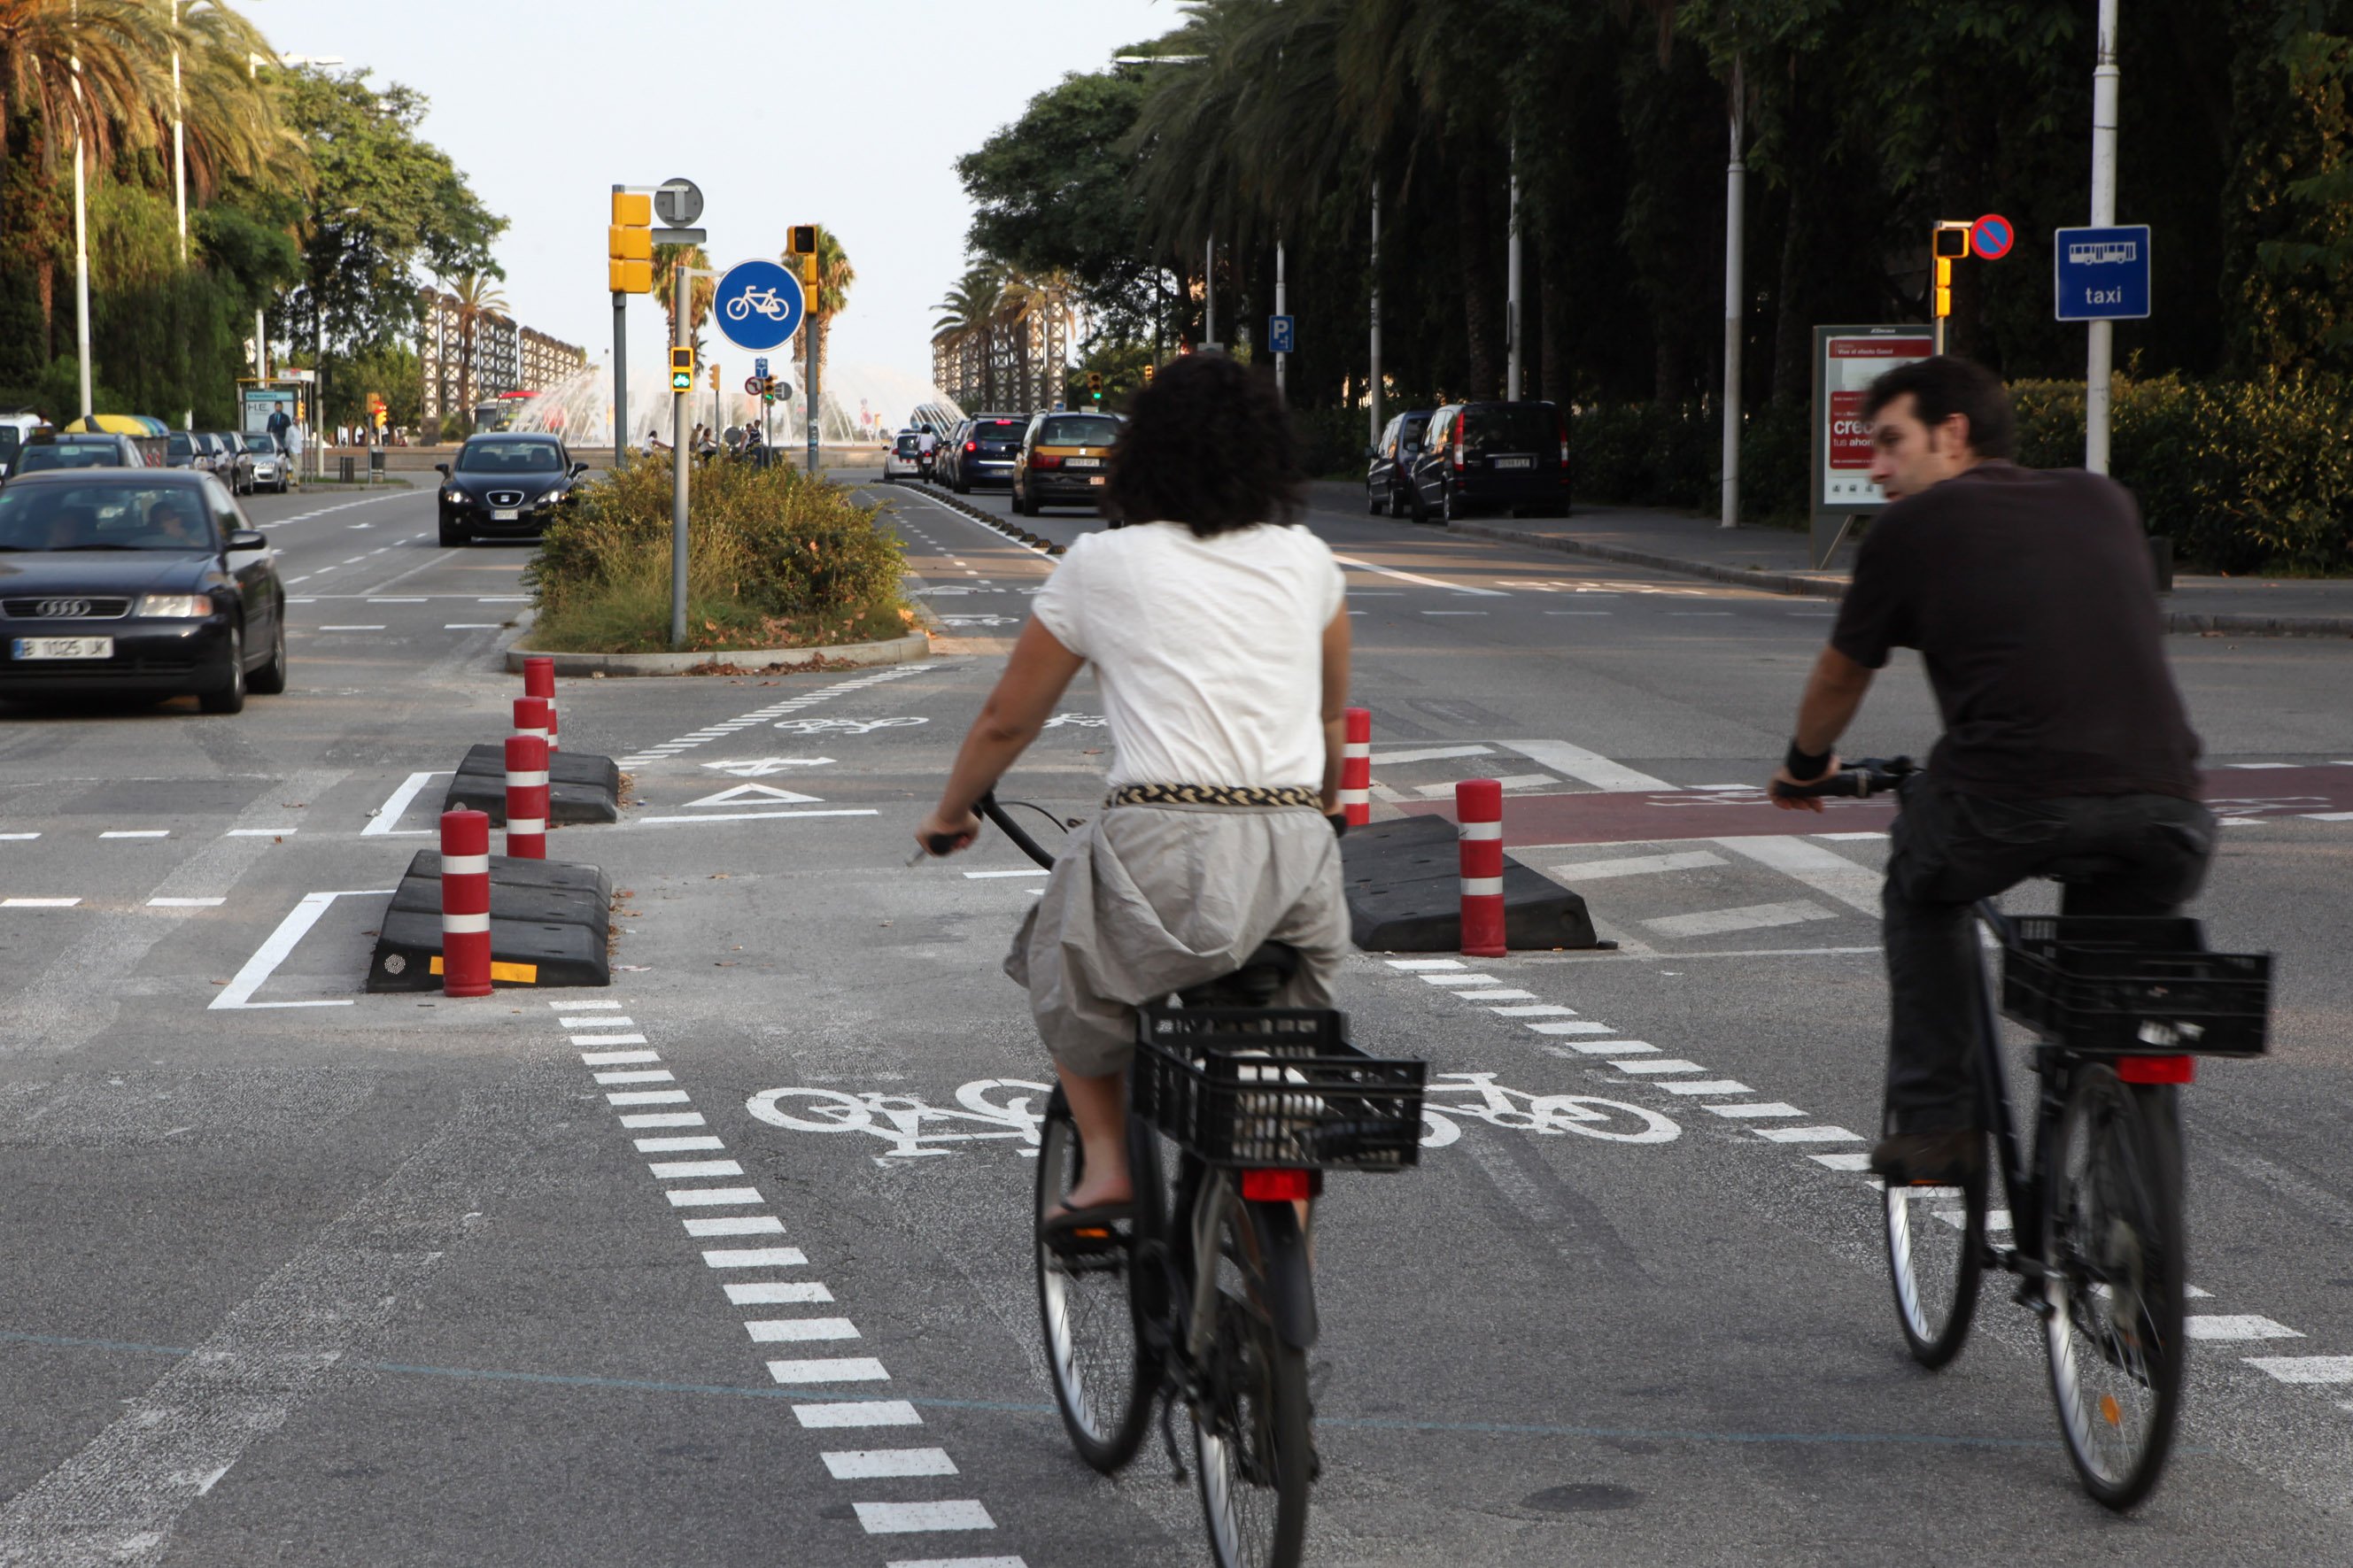 Barcelona prohibirá a las bicis circular por la acera a partir del 2019